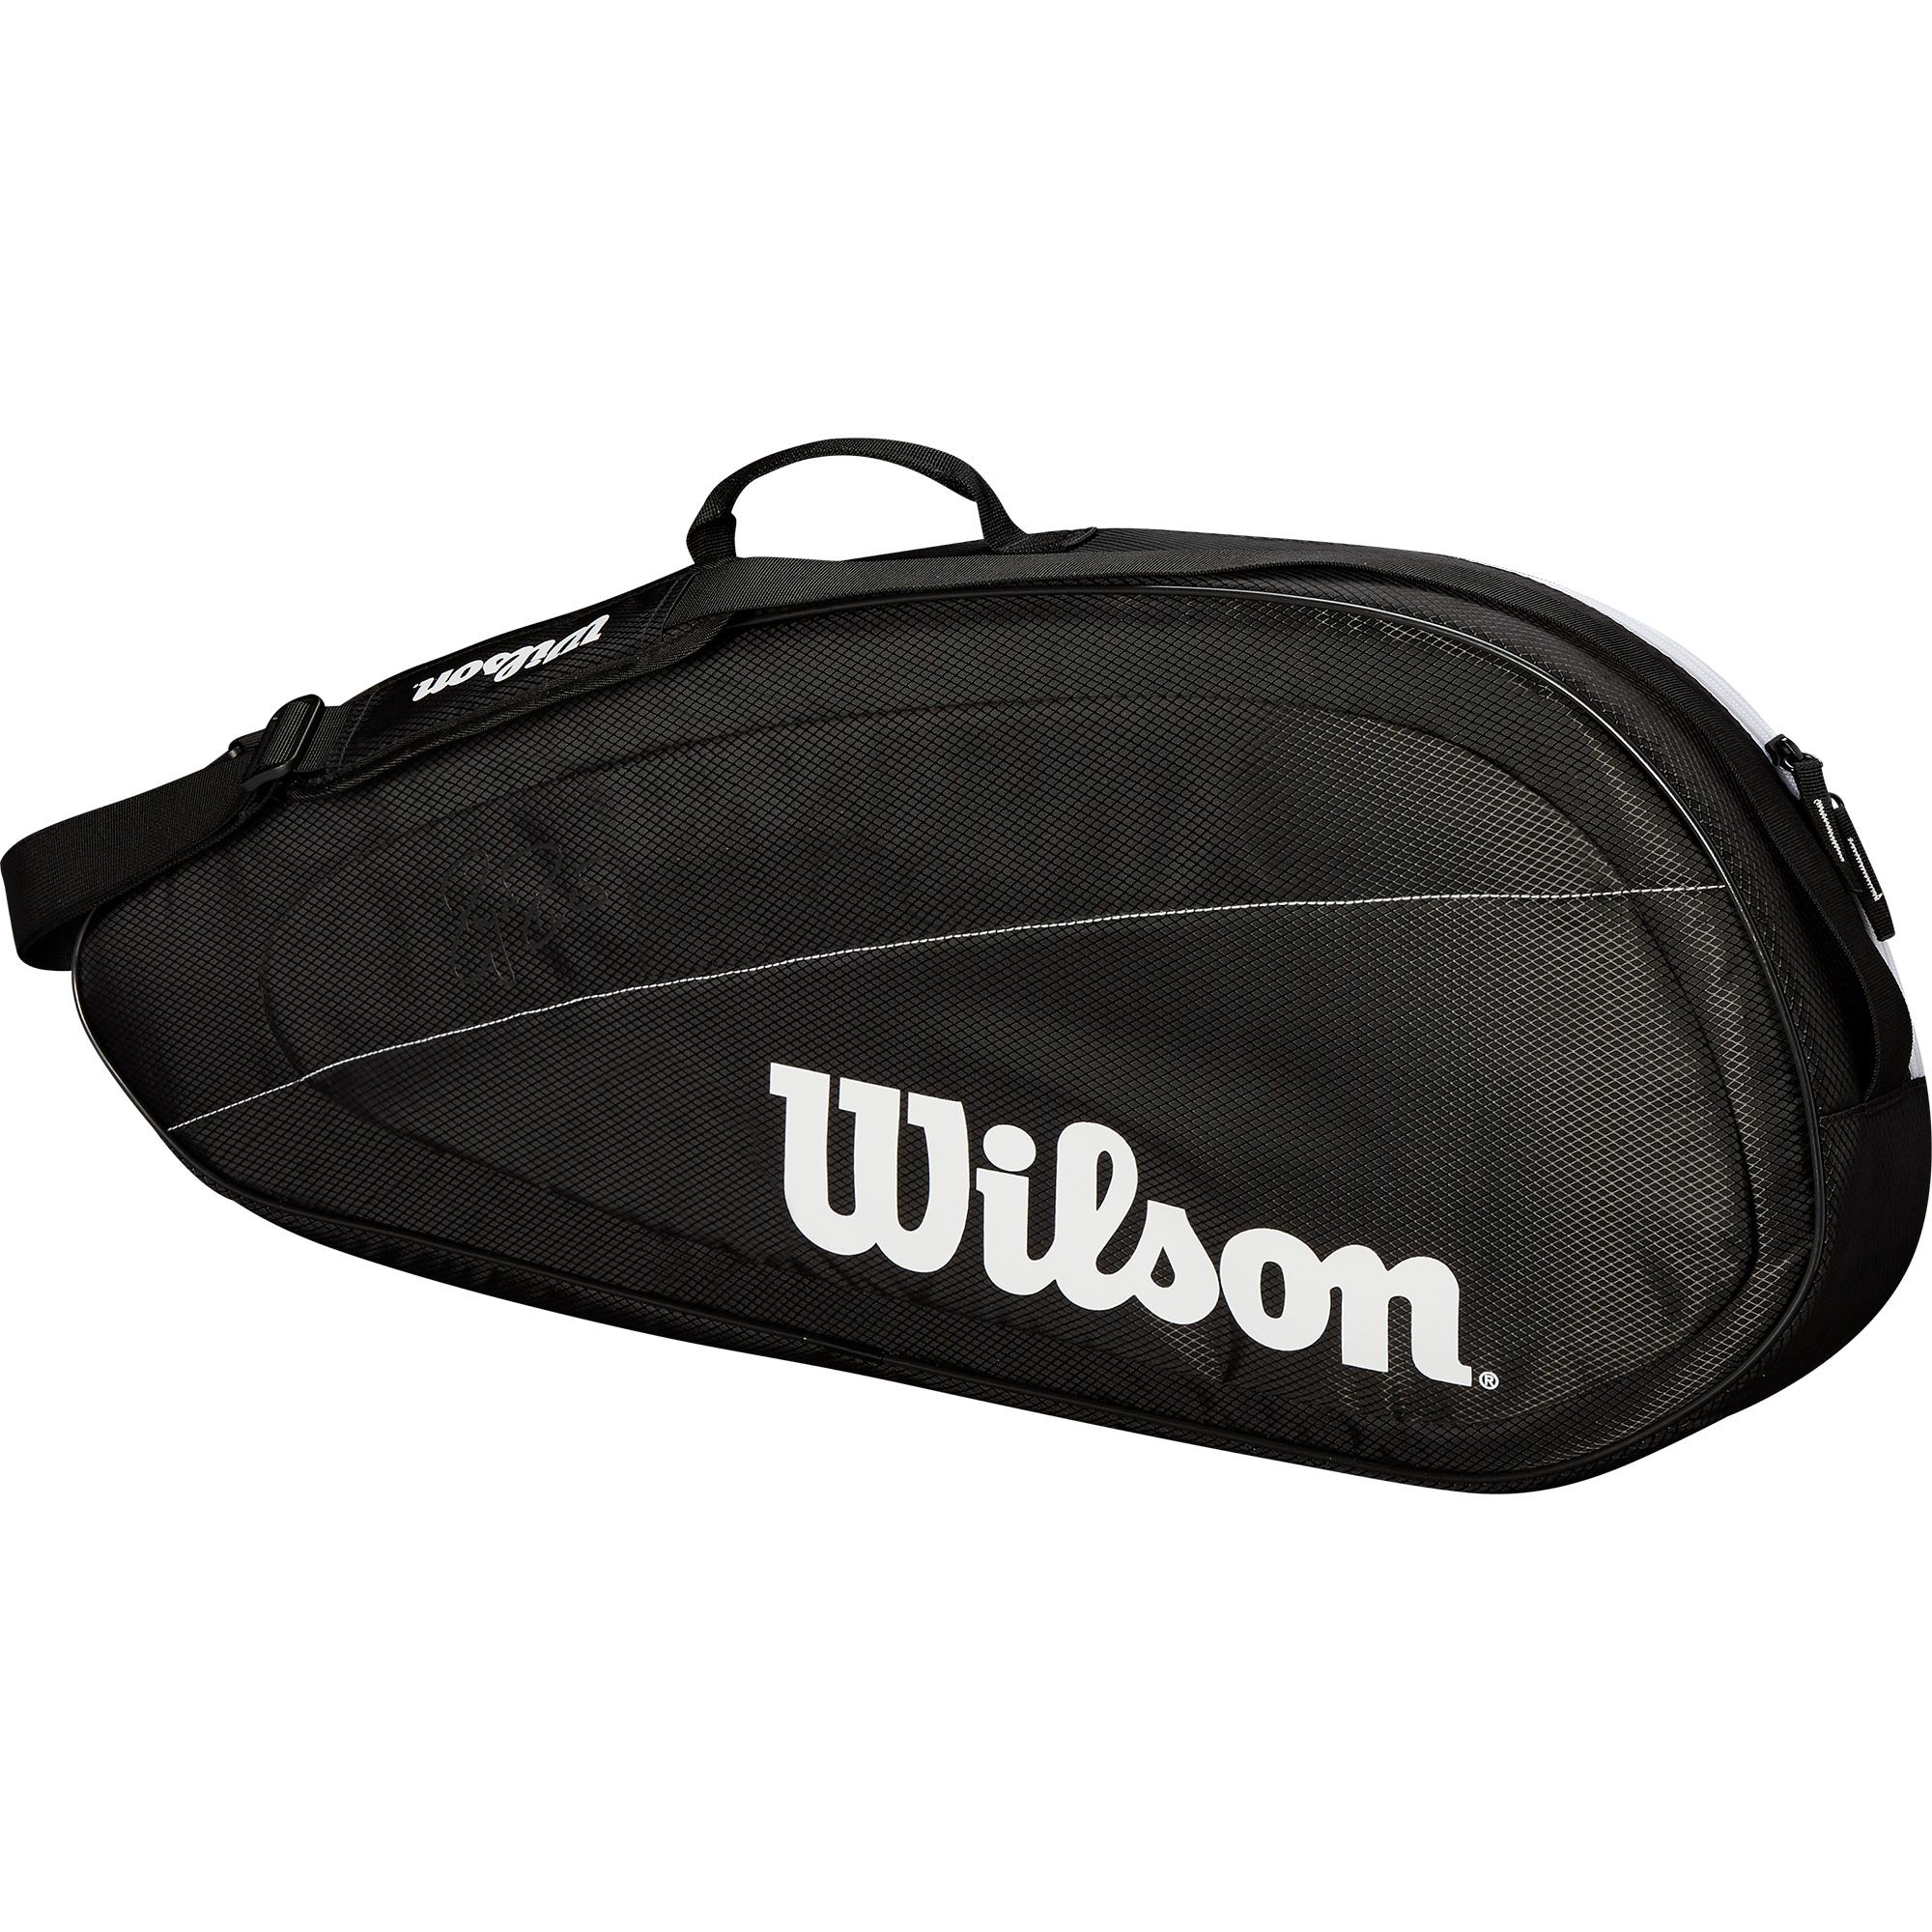 Wilson Federer Team Racket Bag Buy Online